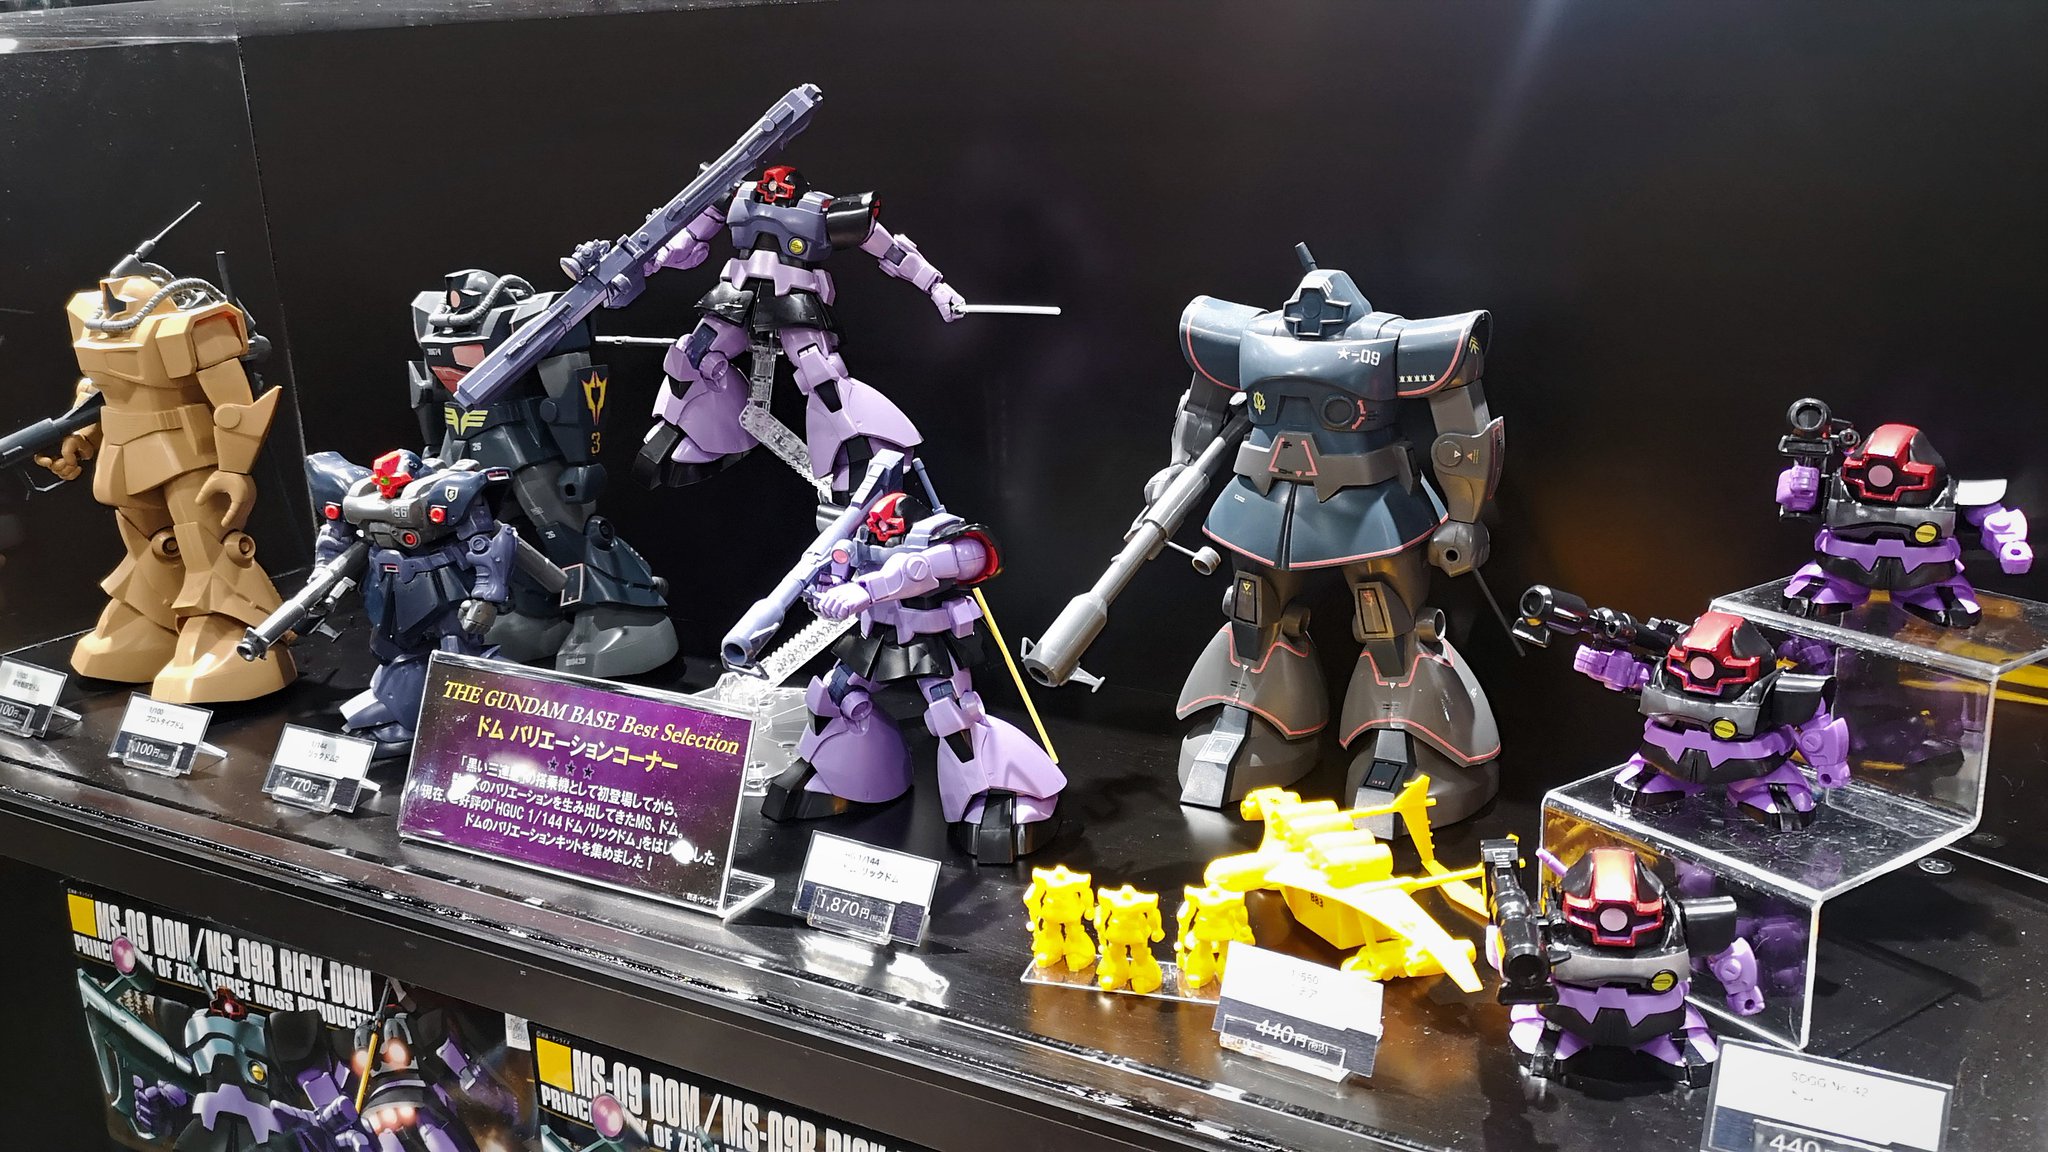 The Gundam Base 東京店情報 根強い人気を誇るms ドム 先日 Hguc 1 144 ドム リック ドム が再入荷されたので ガンダムベース東京で販売しているドム達を一堂に会したドムスペシャルコーナーを現在展開しております 粒ぞろいの大小様々なドム